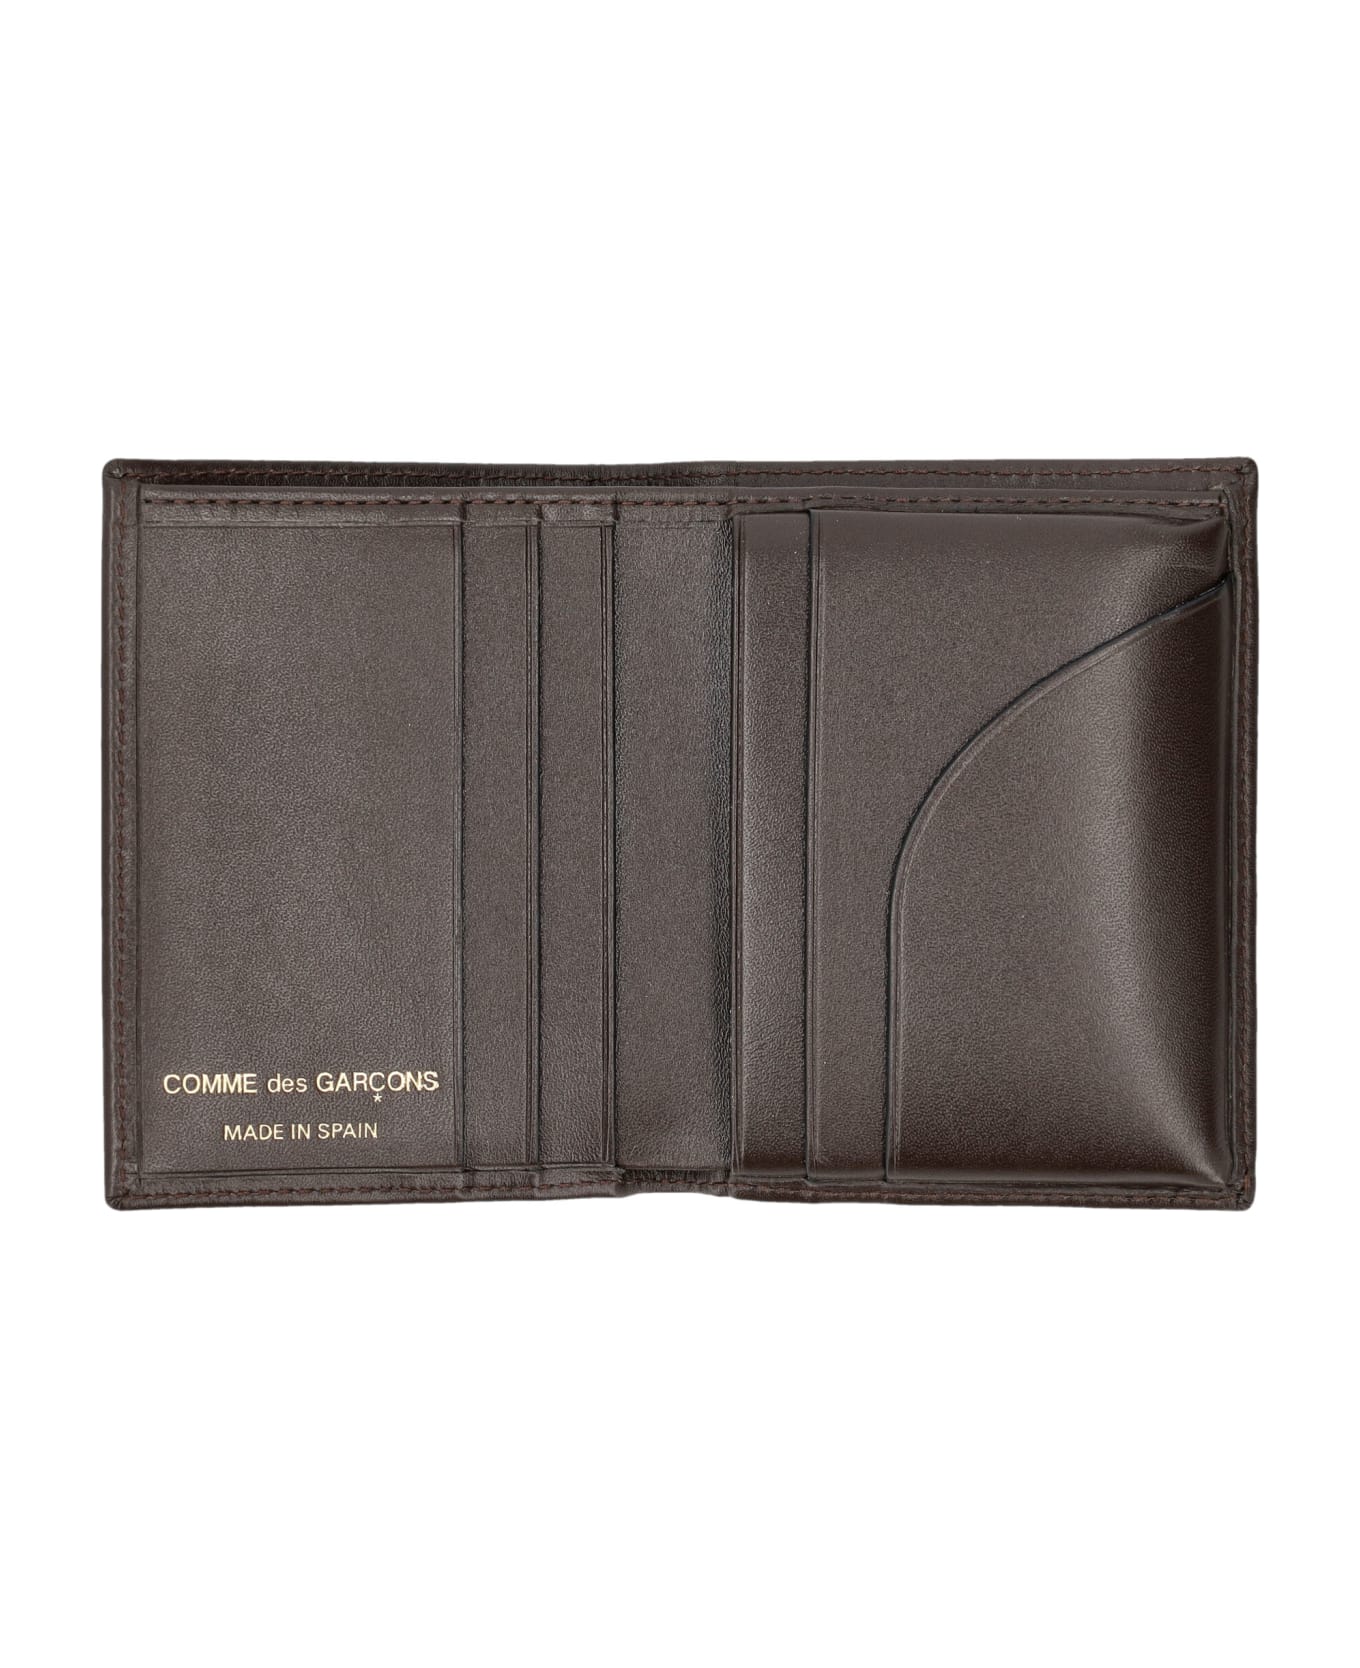 Comme des Garçons Wallet Classic Cardholder - BROWN 財布